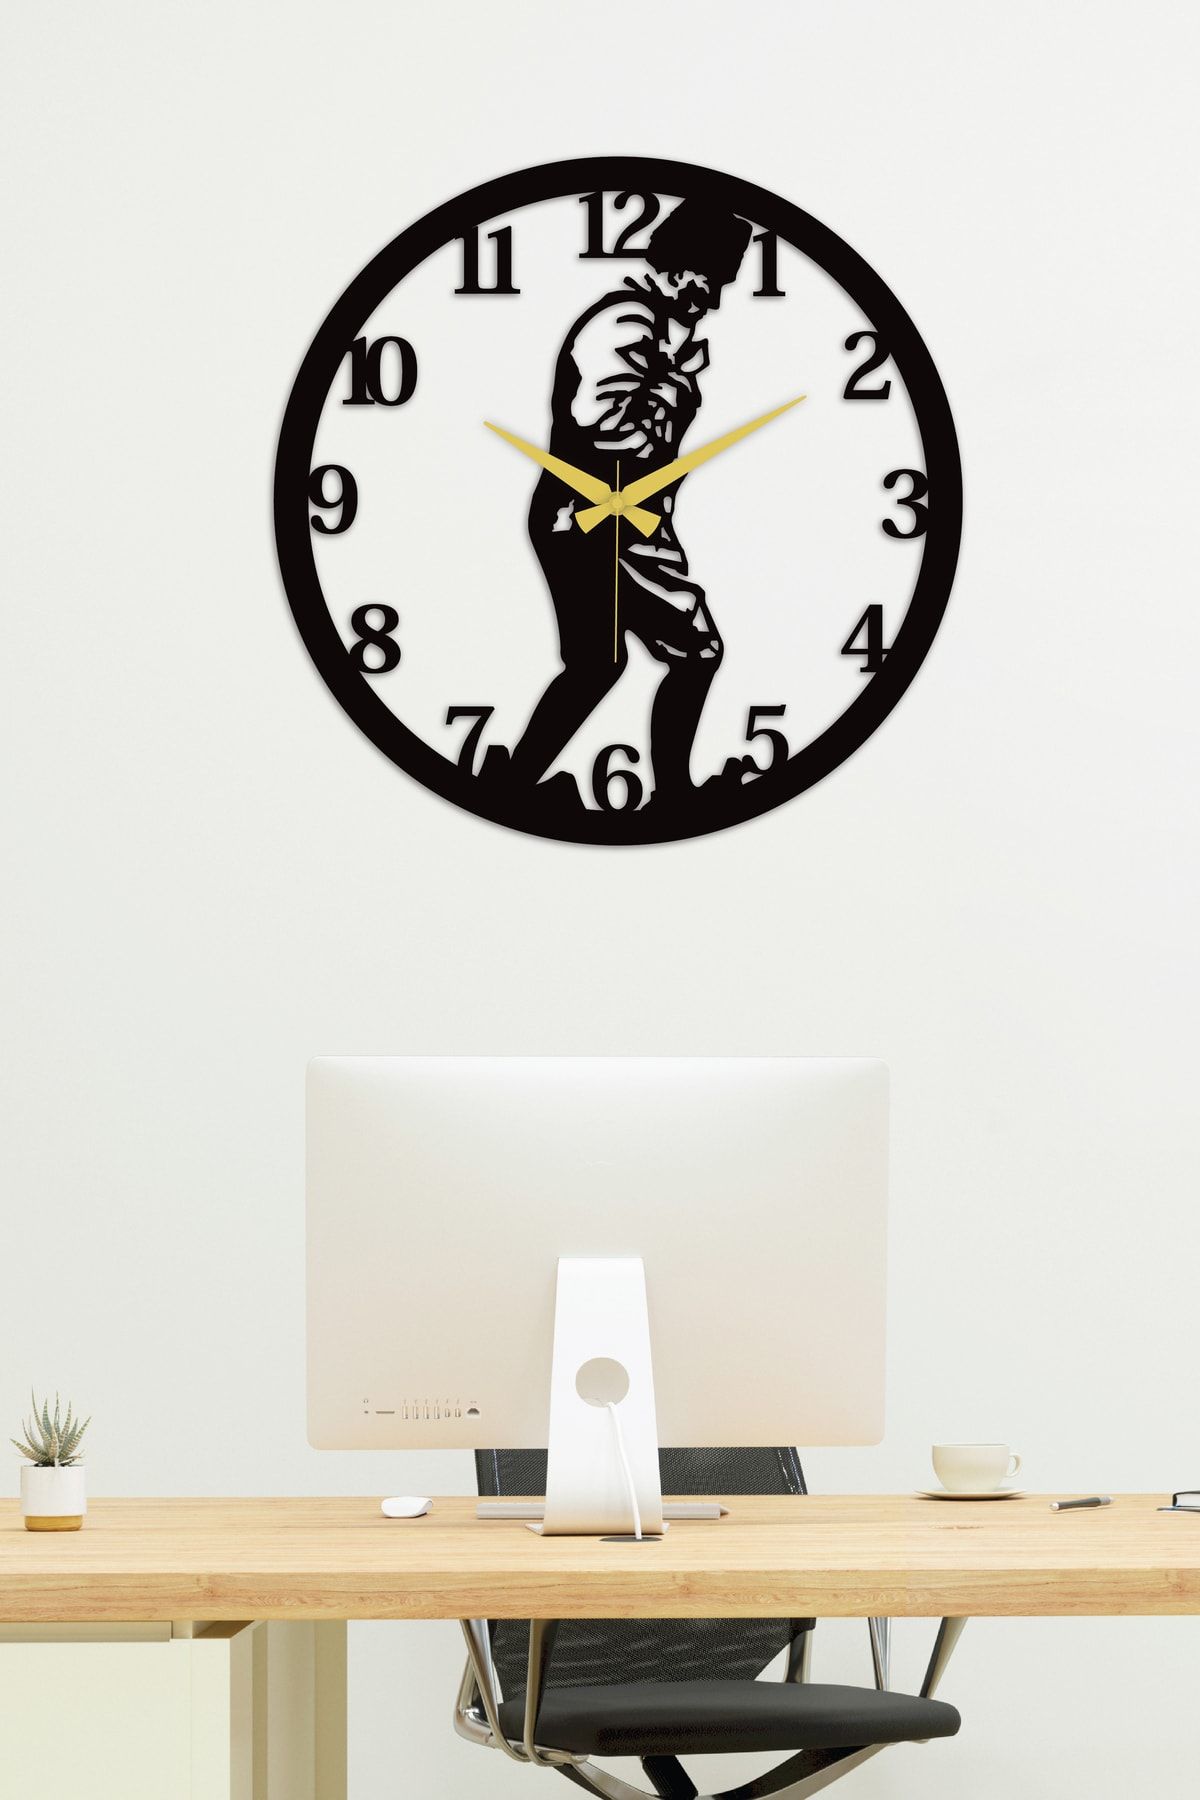 Gowpenart Atatürk Kocatepe Металлические черные настенные часы для дома и офиса - Подарочные часы - 50 х 50 см AtatürkKocaSaatS001